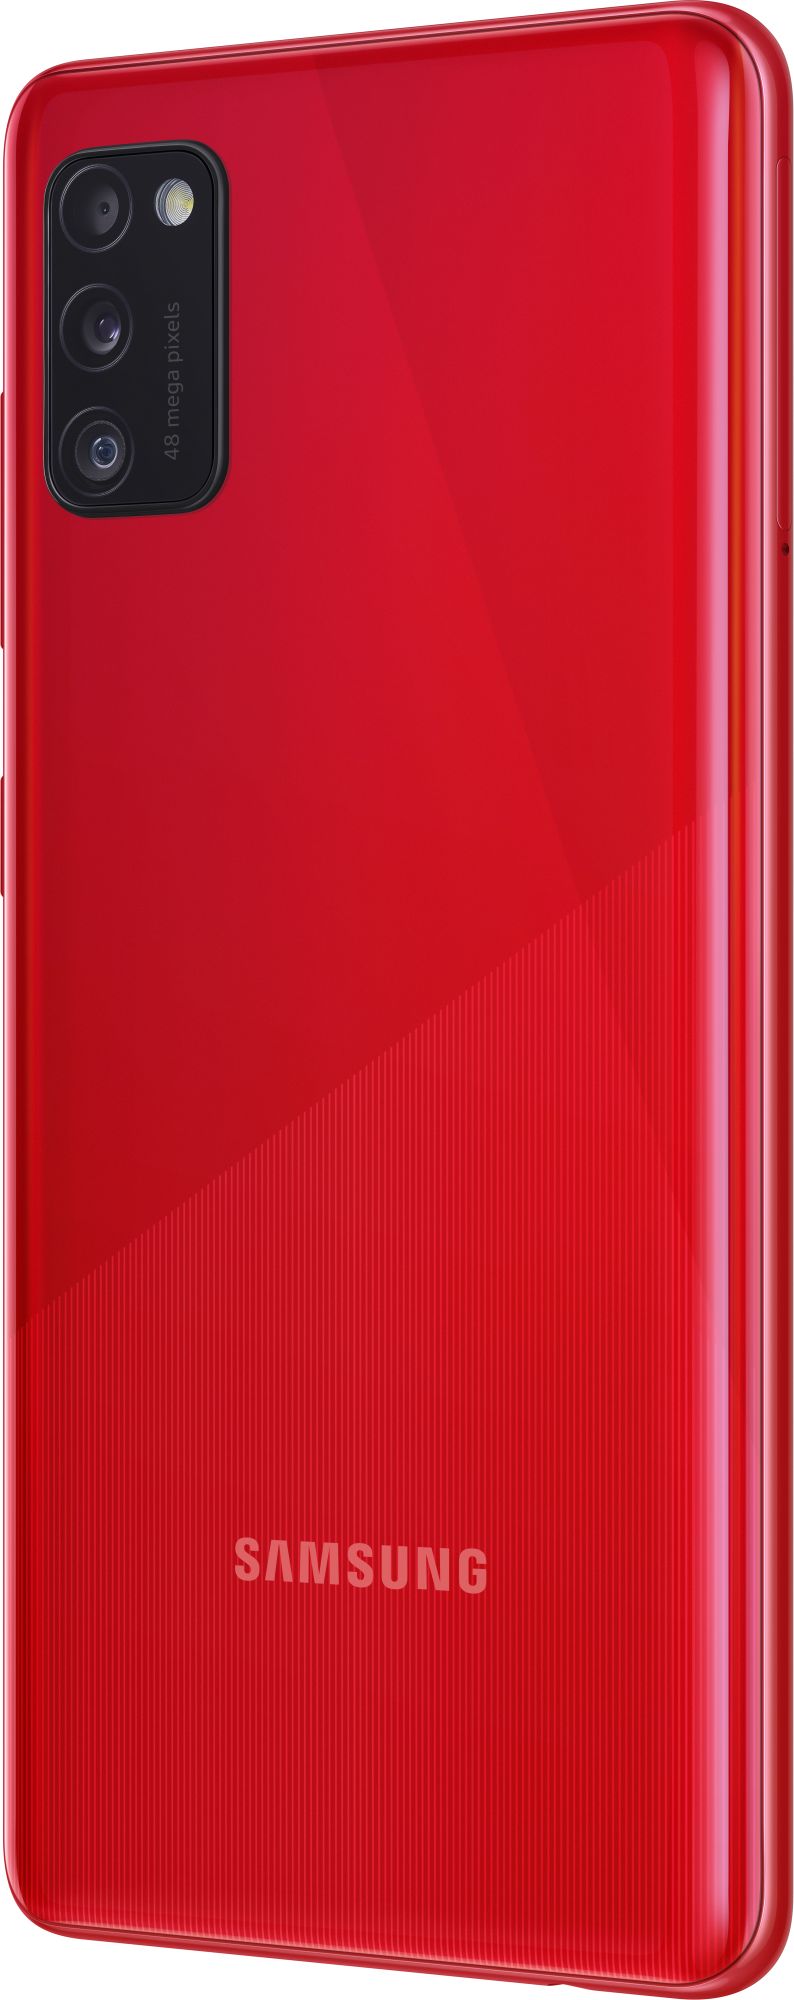 Samsung Galaxy A41 64GB_hor Red